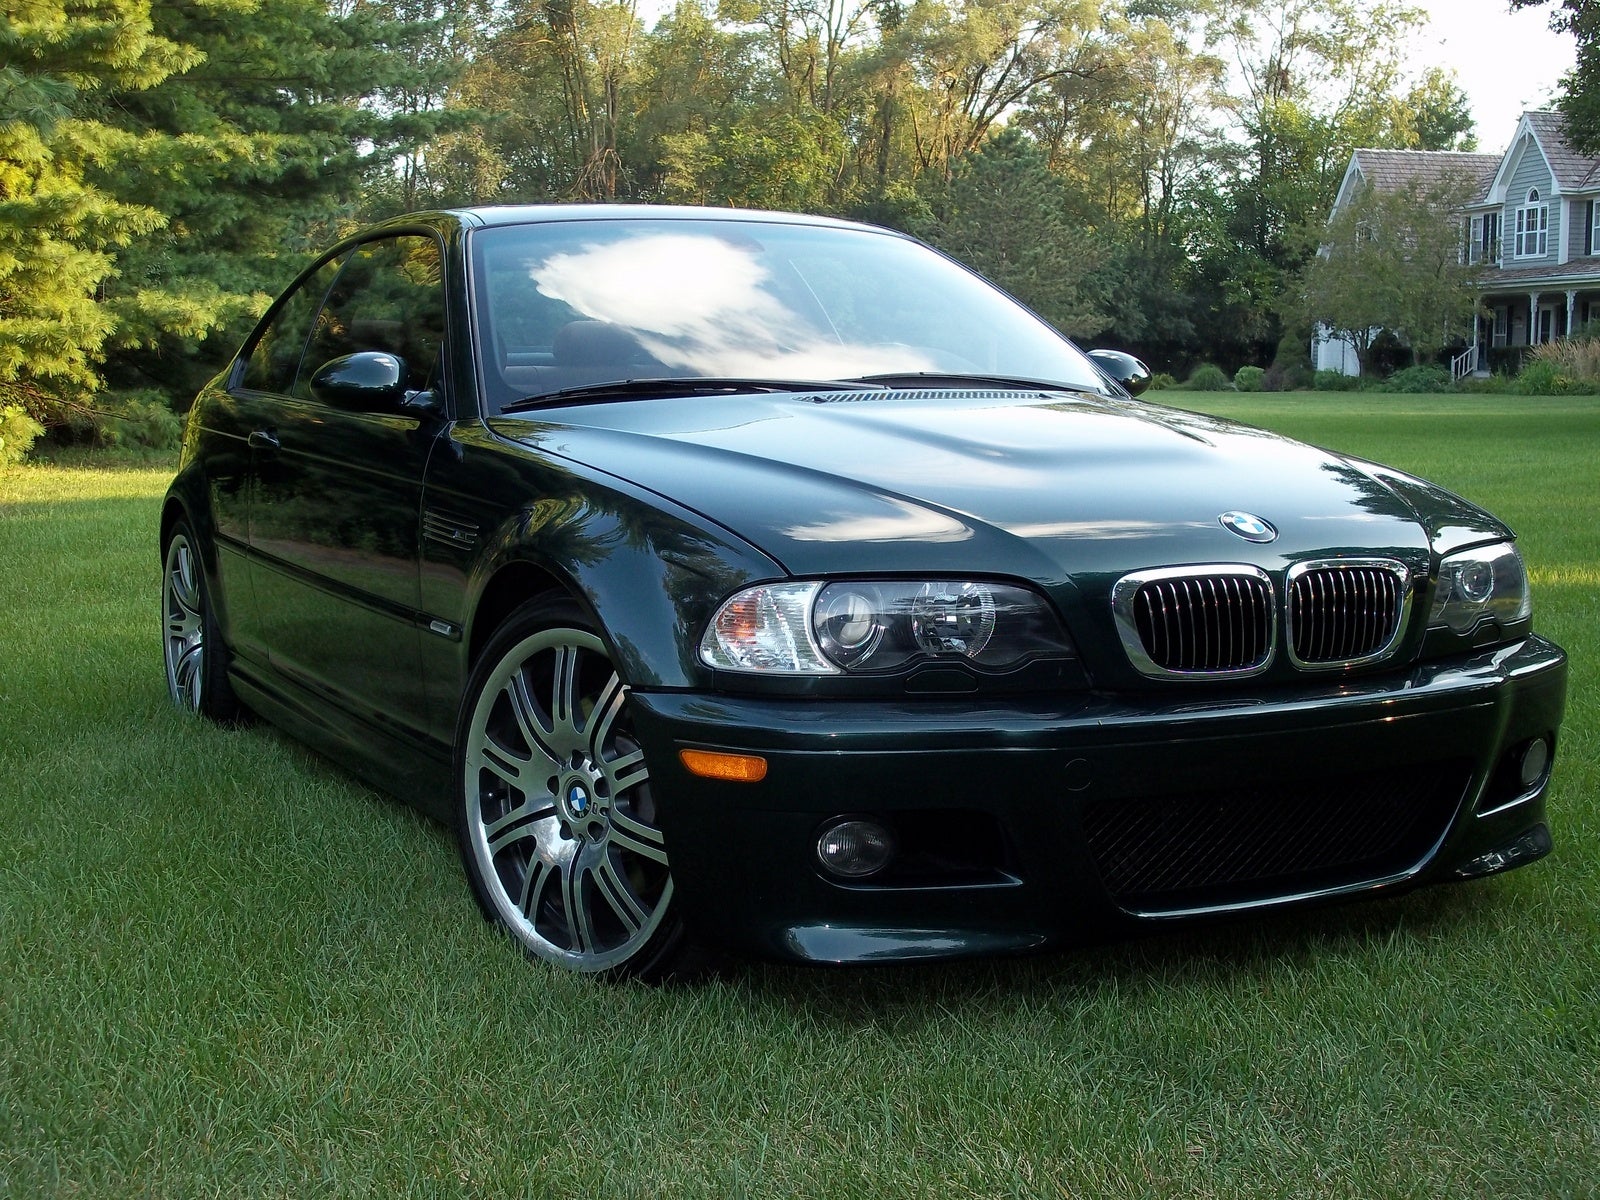 2003 BMW M3  Pictures  CarGurus